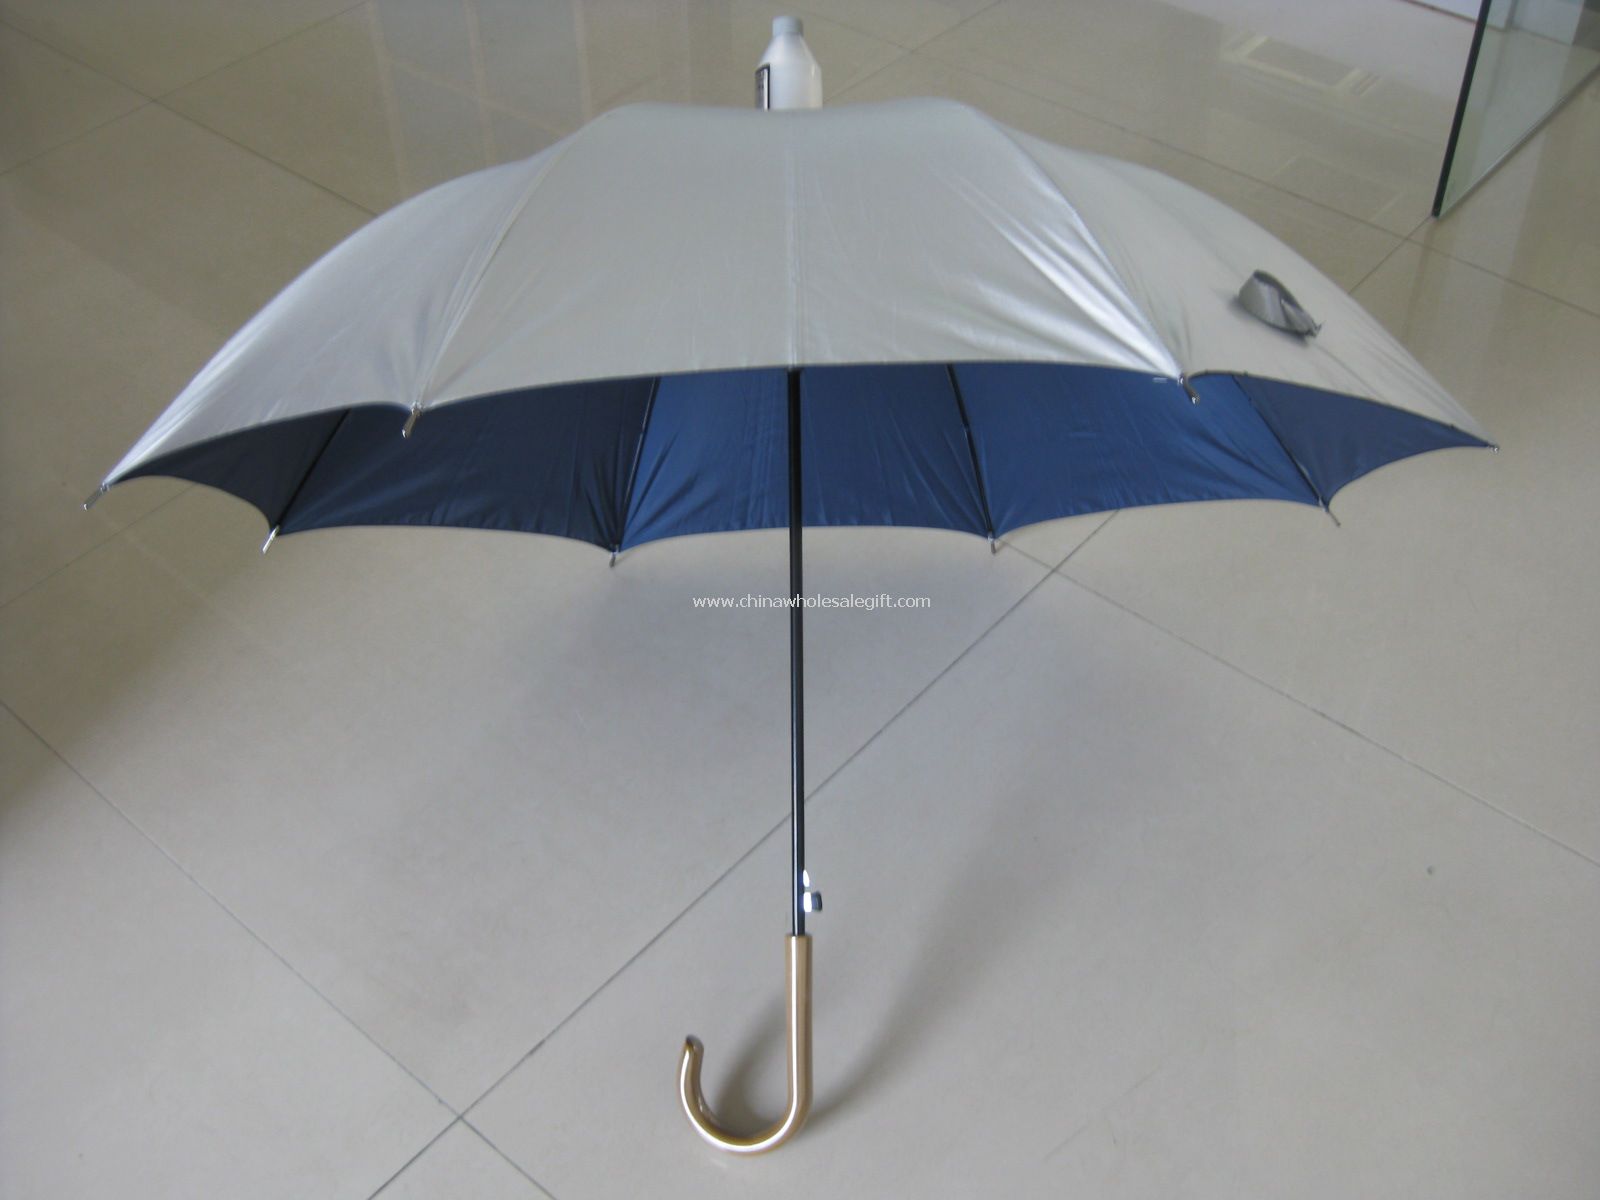 Payung dengan air bukti kasus